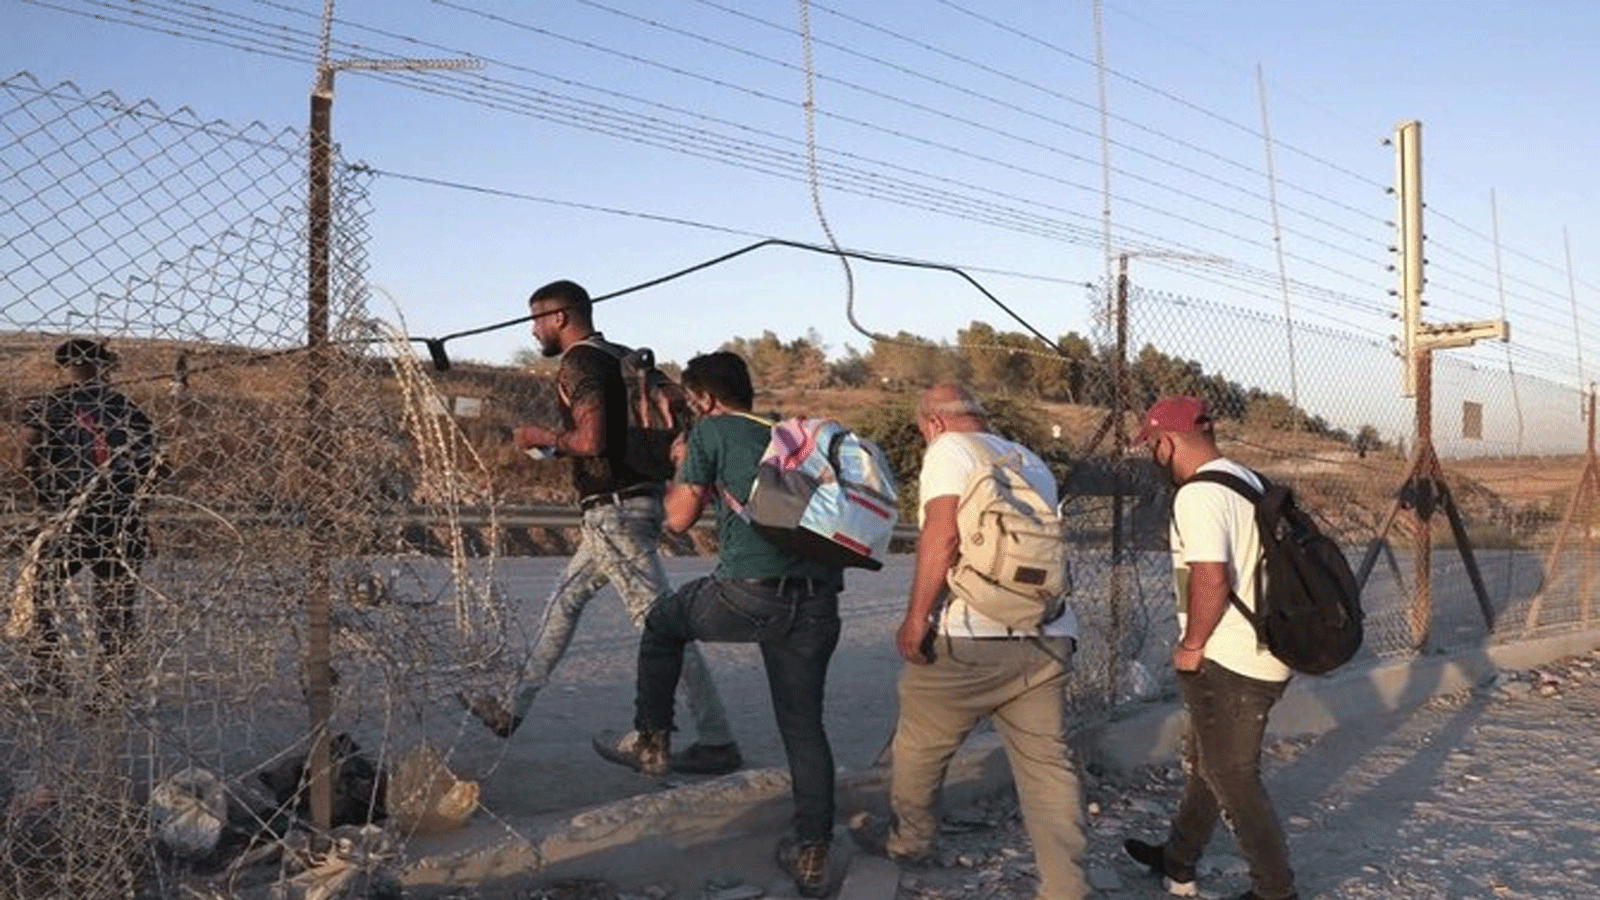 عمال فلسطينيون يعبرون بشكل غير قانوني إلى مناطق إسرائيلية من خلال ثقب في السياج الفاصل الإسرائيلي بالقرب من حاجز ميتار وقرية الظاهرية.